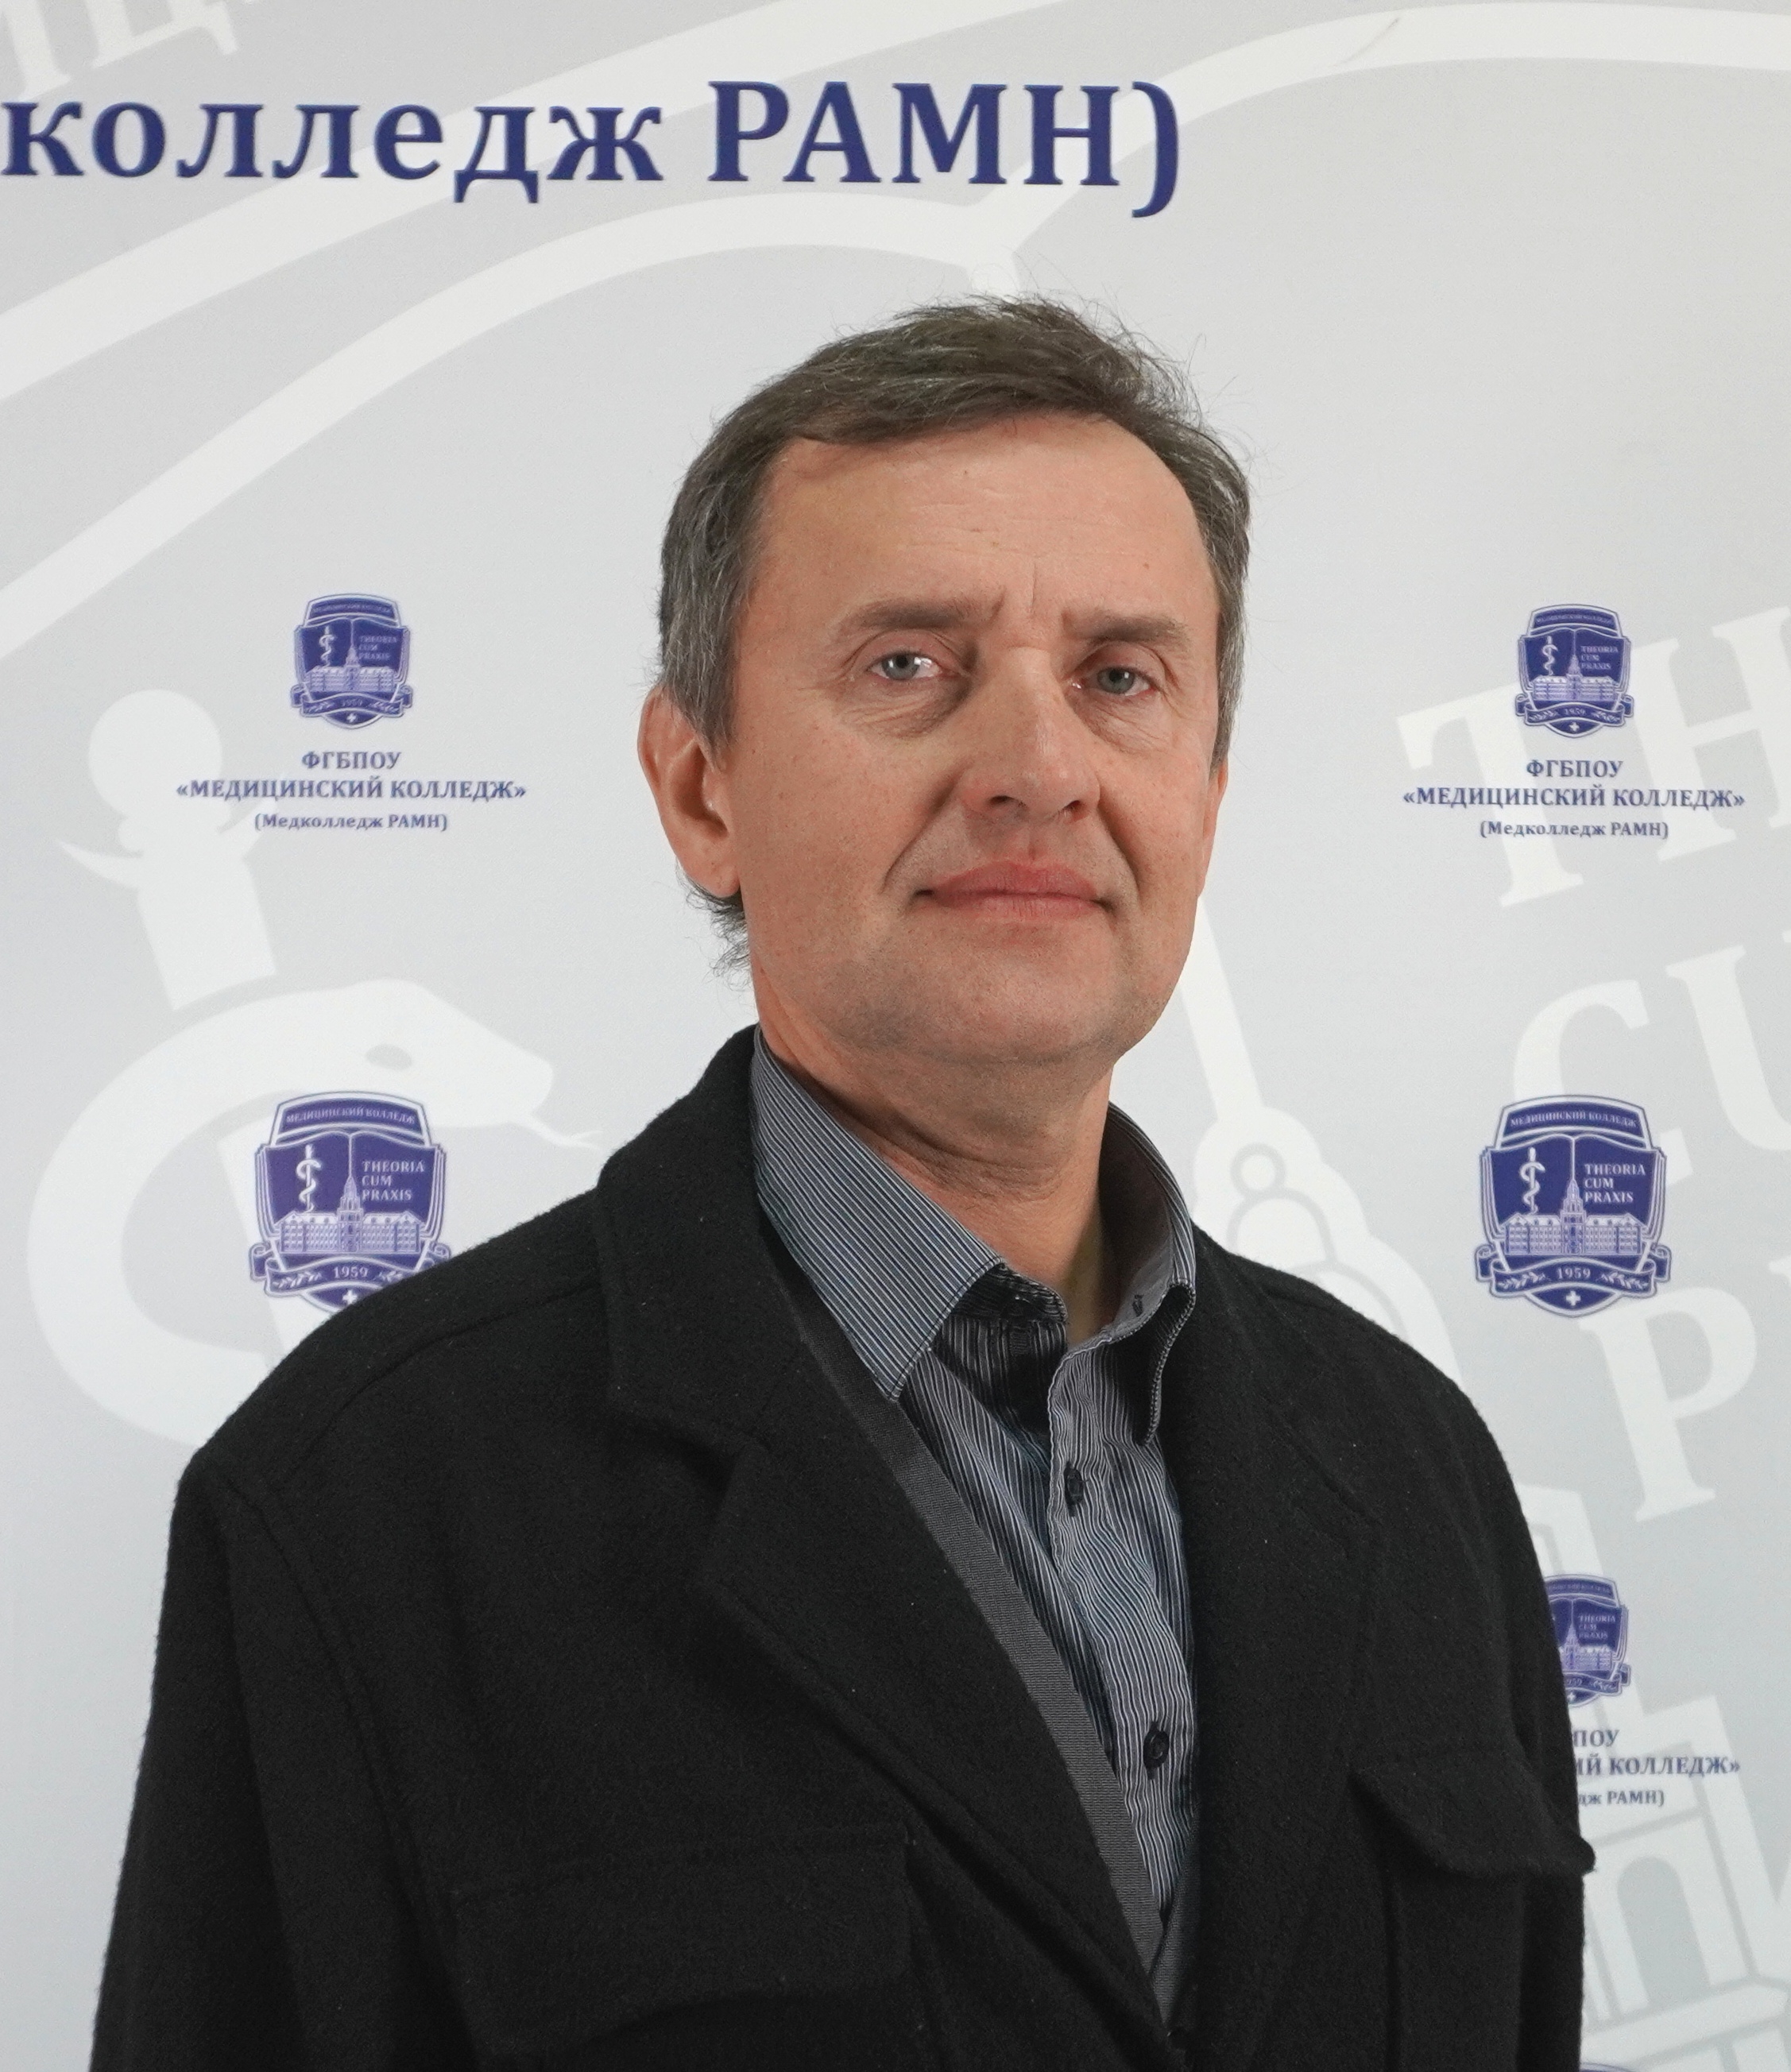 Мясников Сергей Владимирович